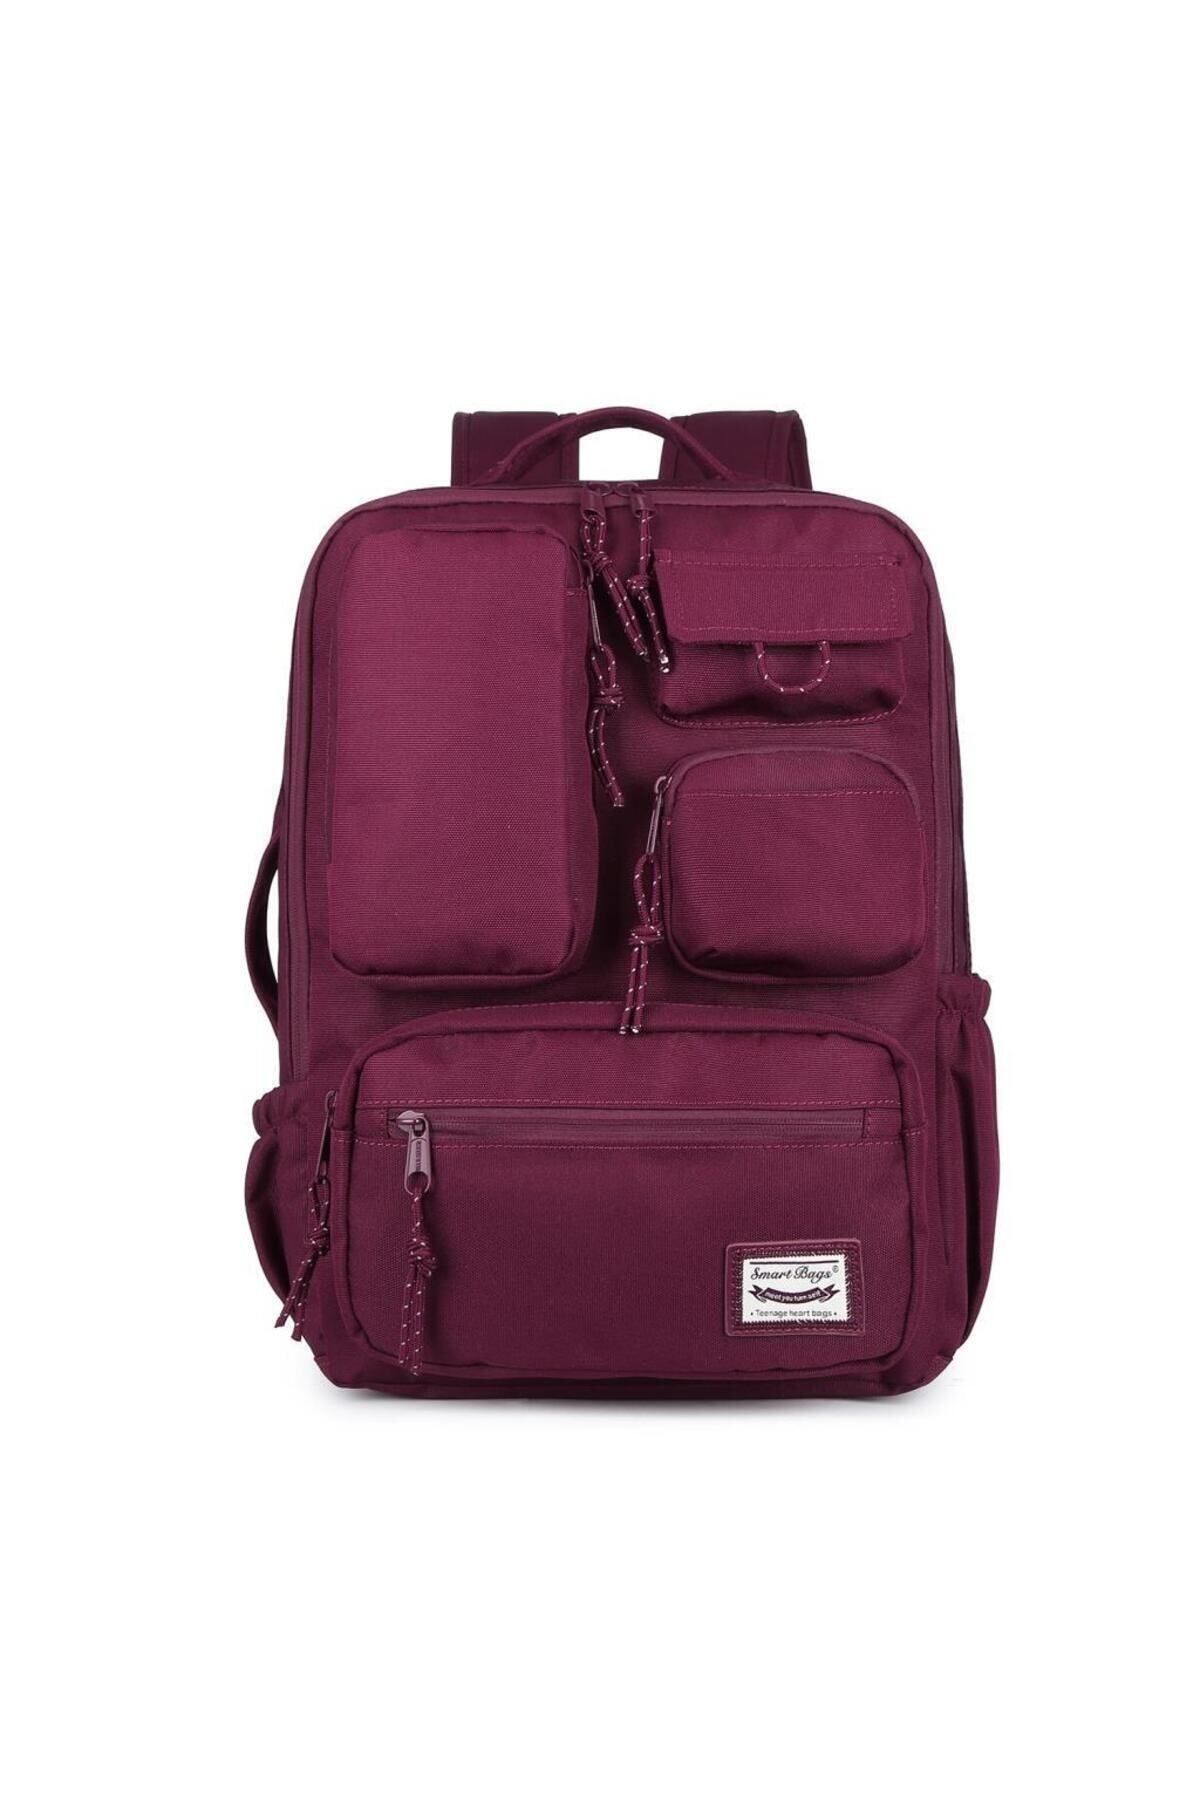 Smart Bags Sırt Çantası Okul Boyu Laptop Gözlü 3210